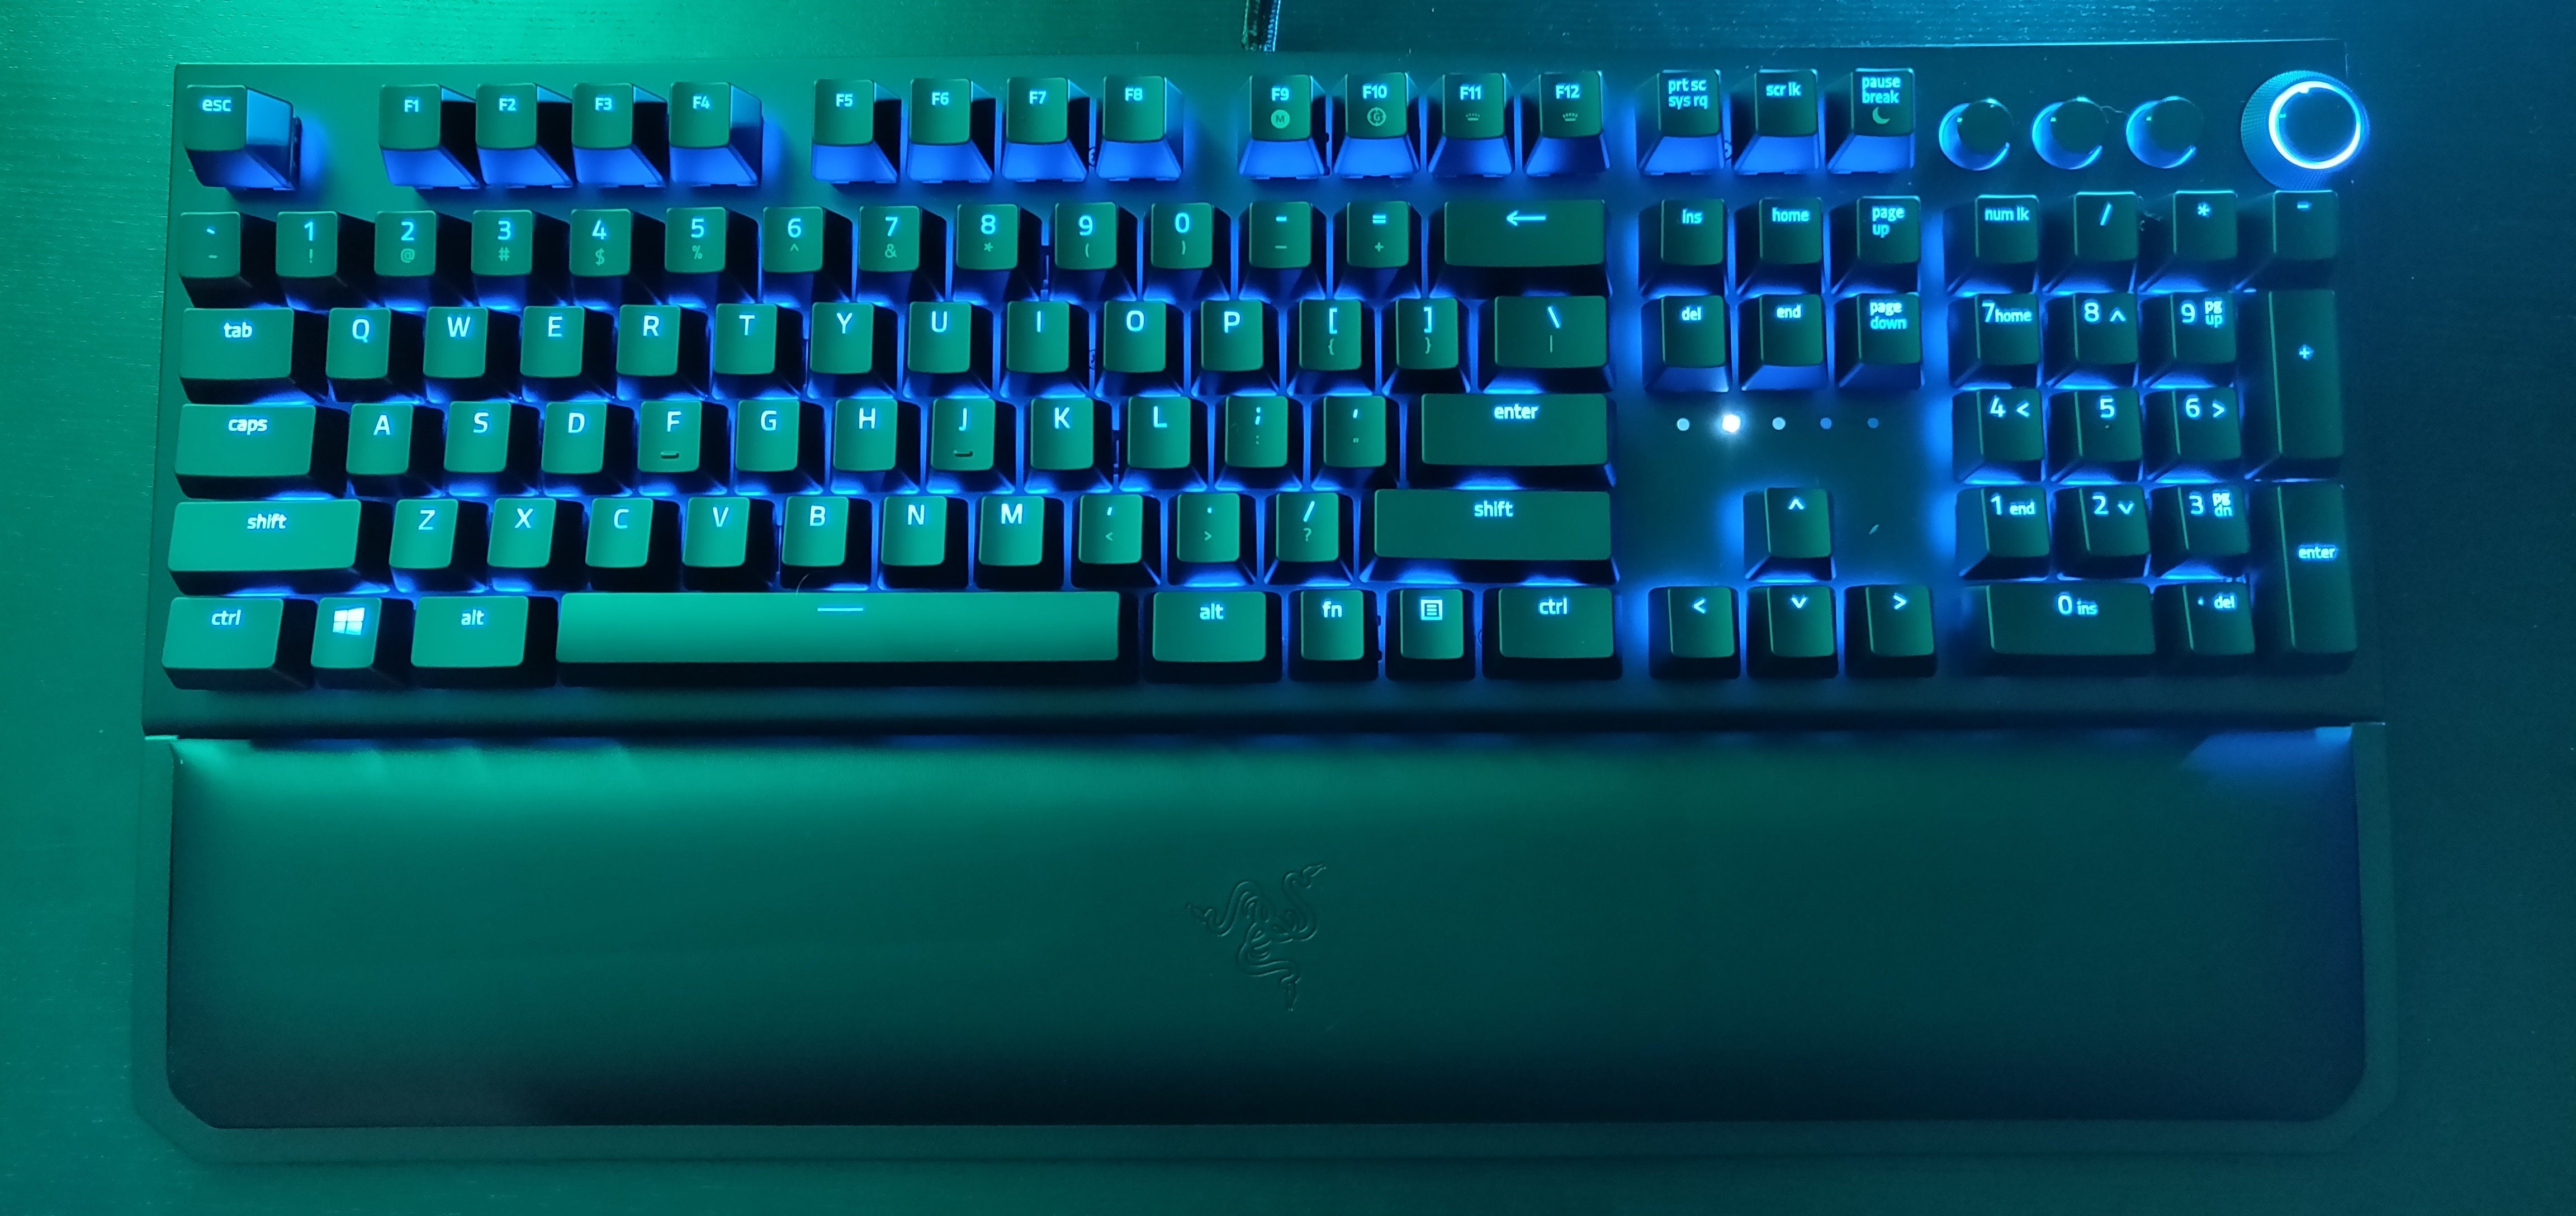 Razer BlackWidow Elite review: Finally, Razer's flagship keyboard gets